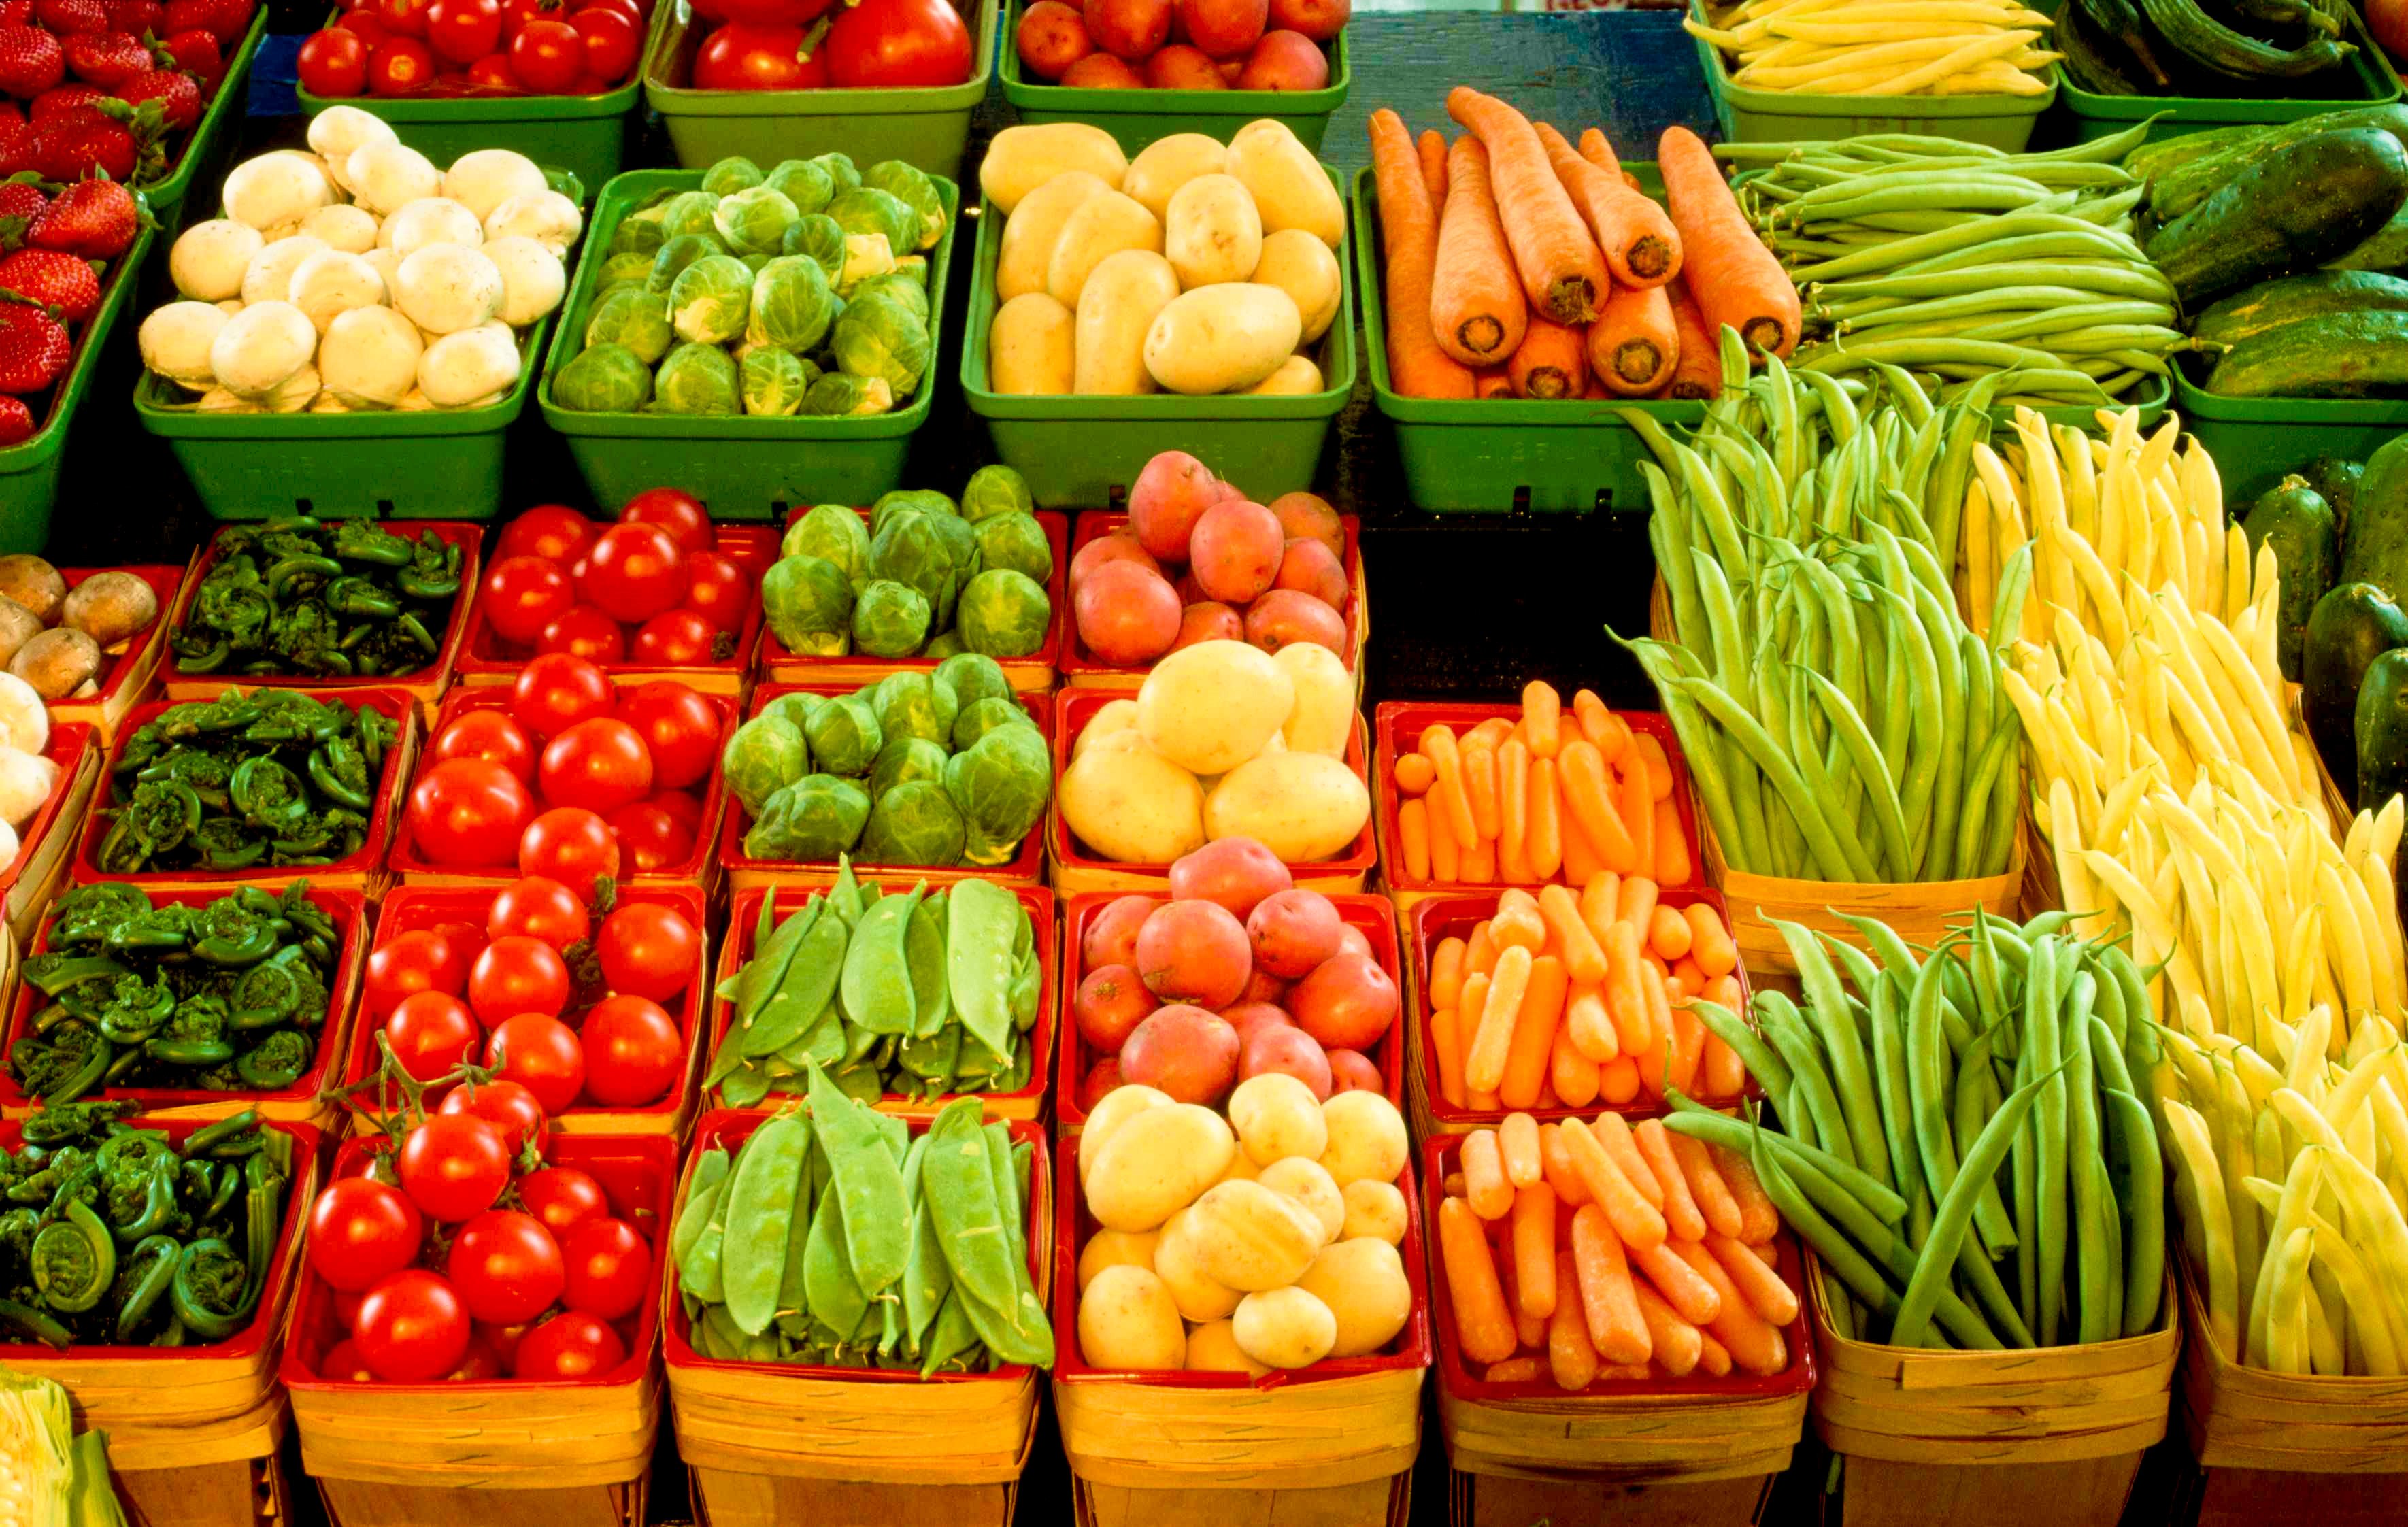 Купить овощи ростов. Ассортимент овощей. Овощи на прилавке. Выкладка овощей. Рынок овощей и фруктов.